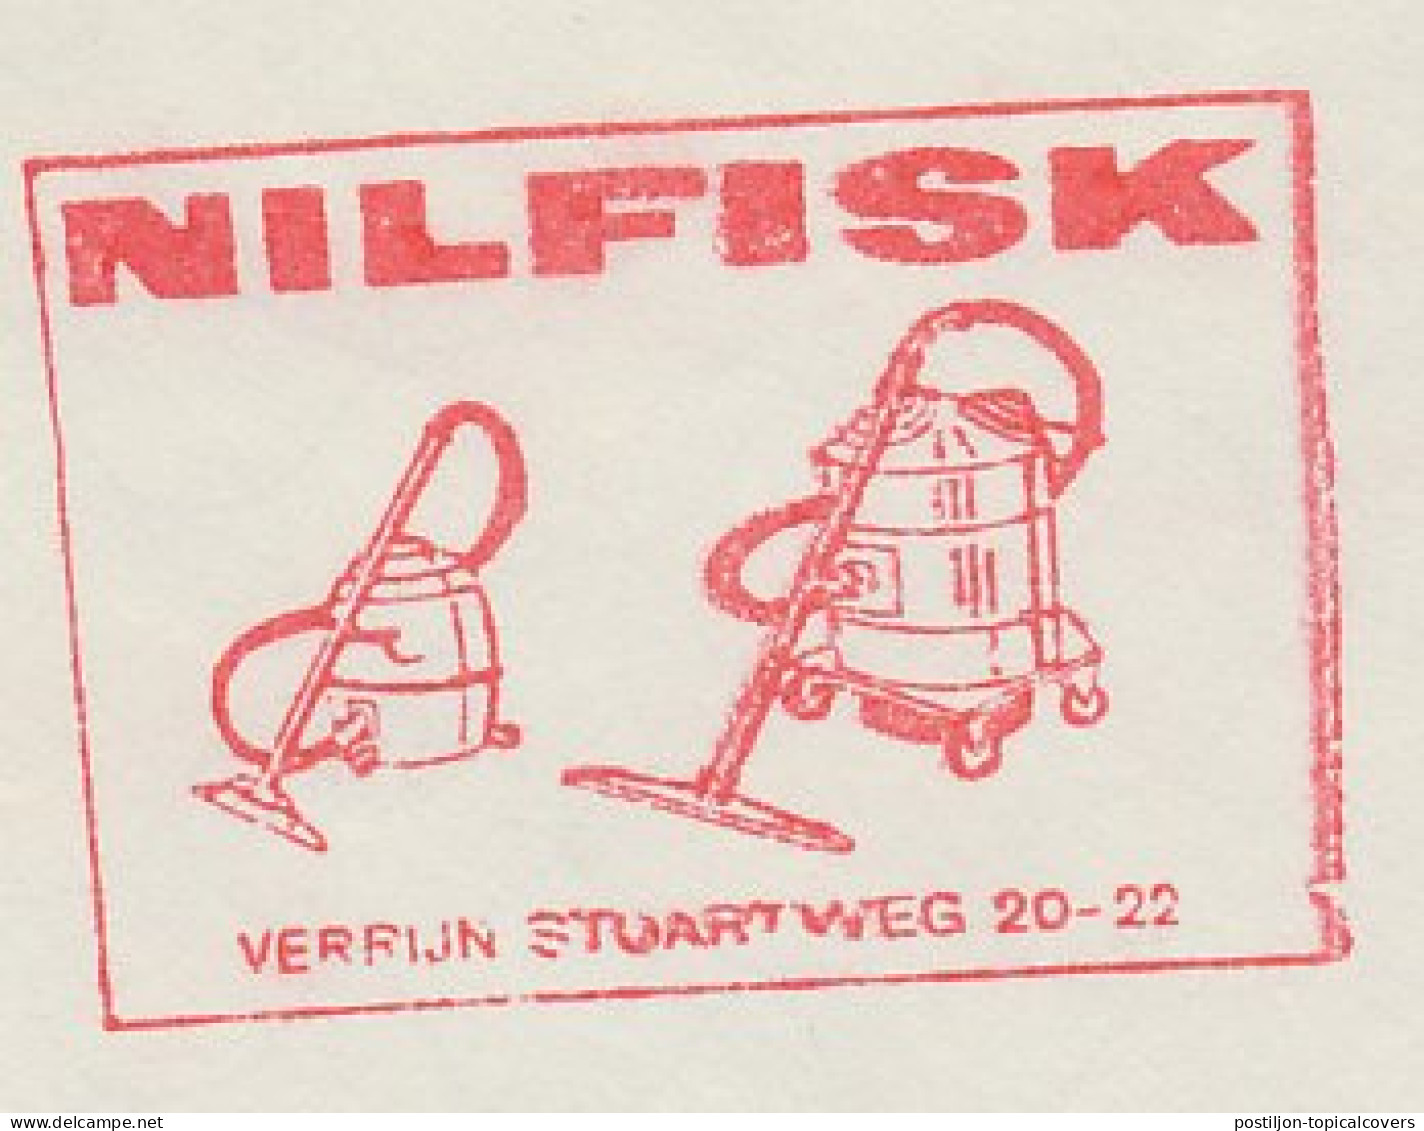 Meter Cut Netherlands 1965 Vacuum Cleaner - Nilfisk - Unclassified